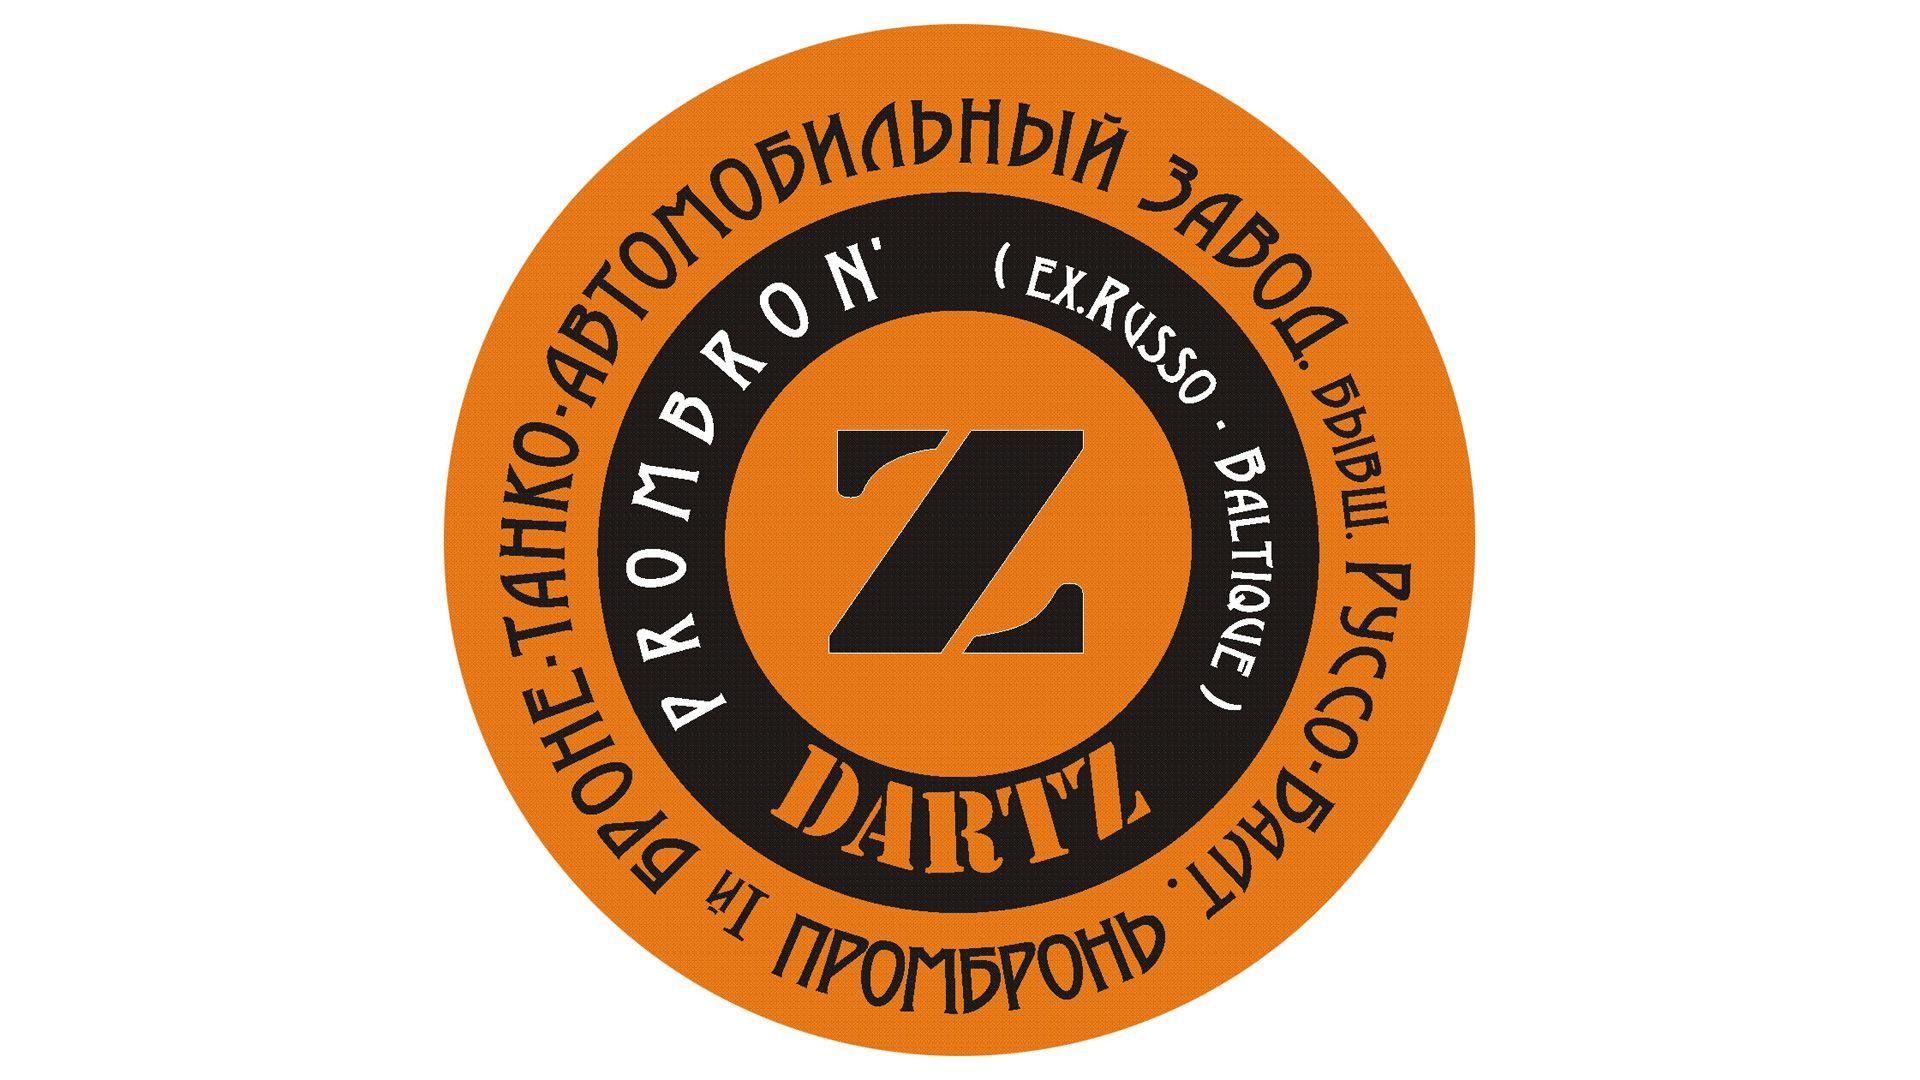 Prombron Car Logo - Dartz Logo, Information